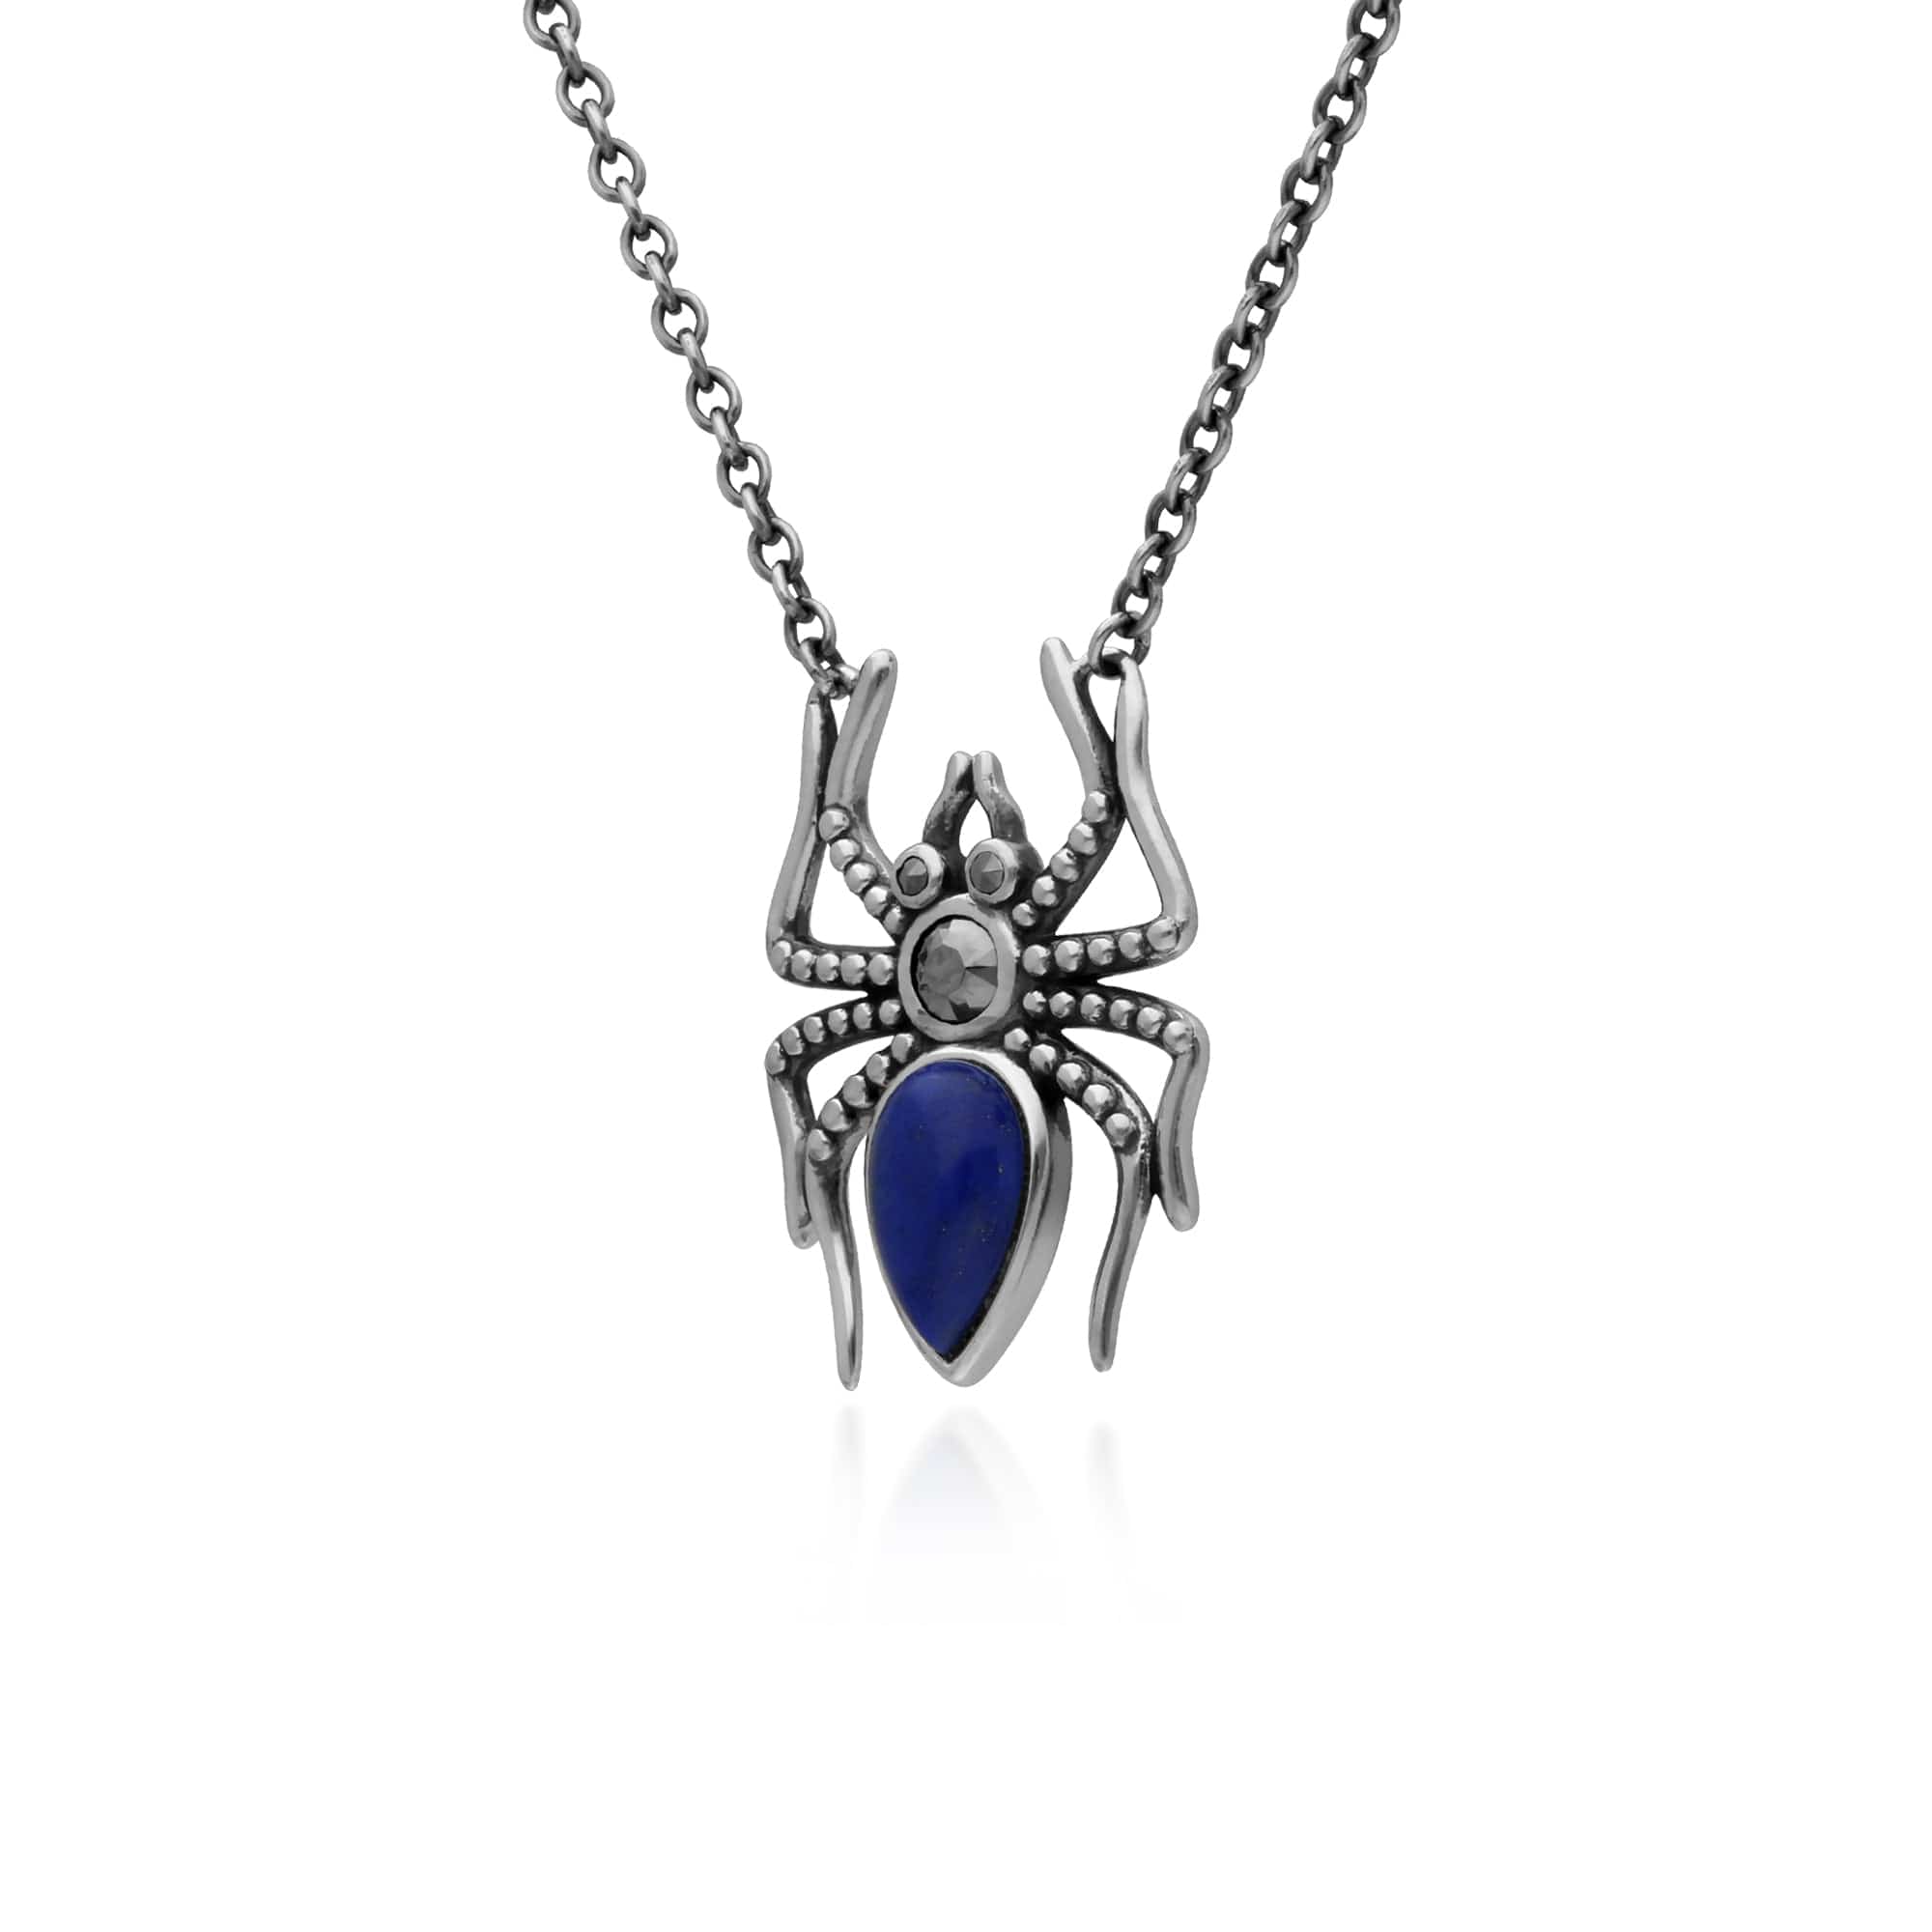 Gemondo Sterling Silver Lapis Lazuli & Marcasite Spider 45cm Necklace - Gemondo